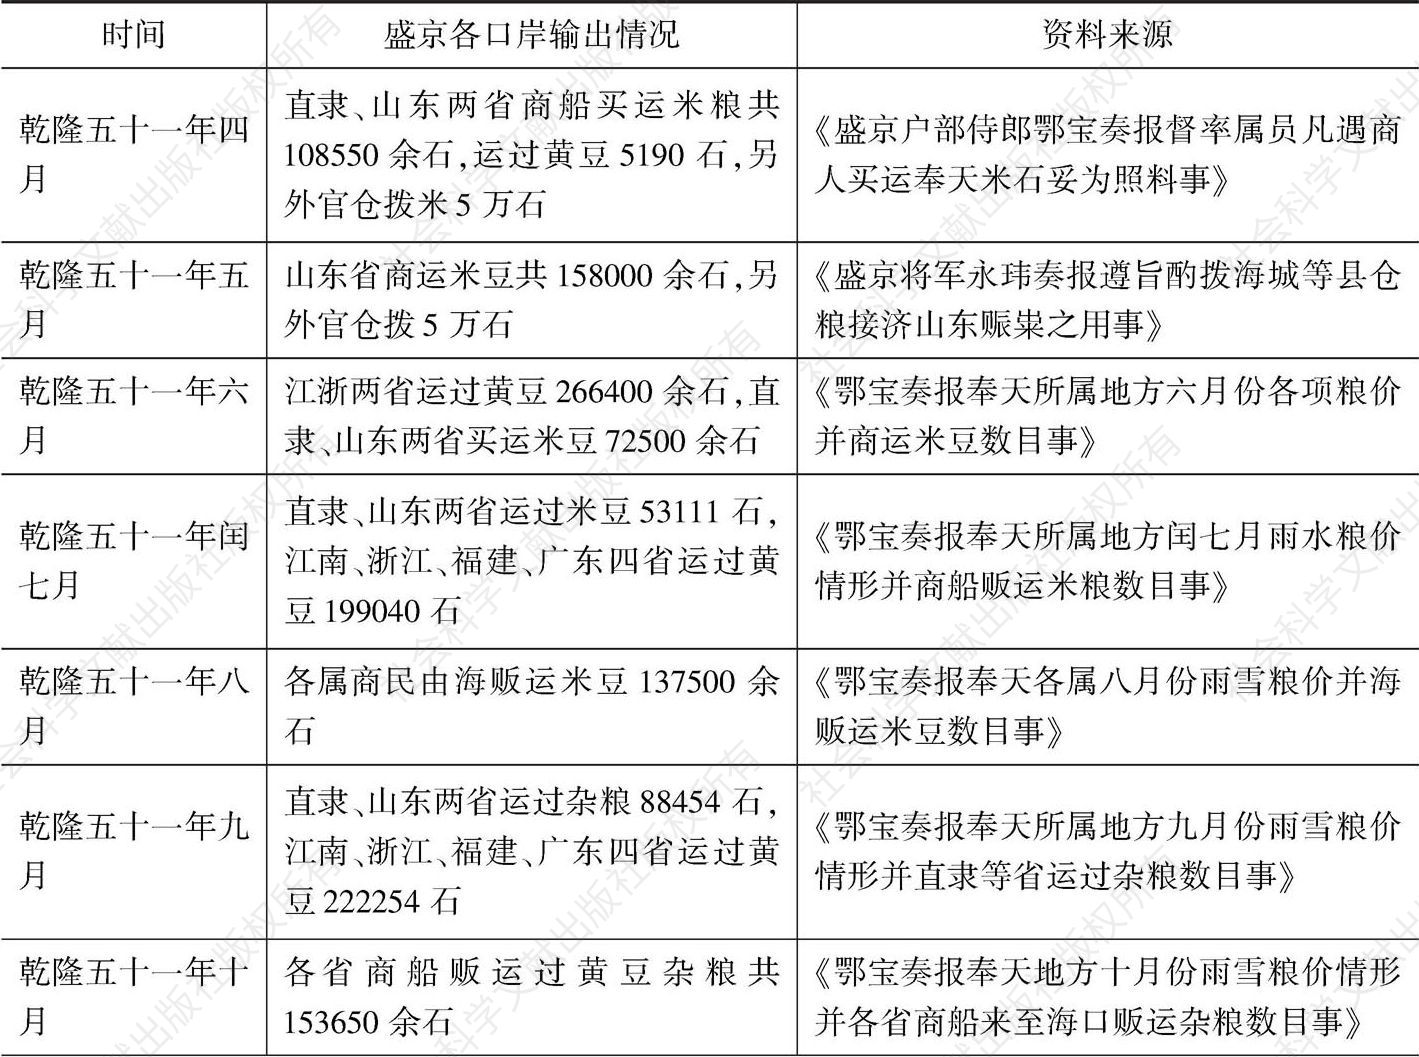 表3-1 档案记载乾隆五十一年至五十二年部分月份盛京海口粮食输出情况